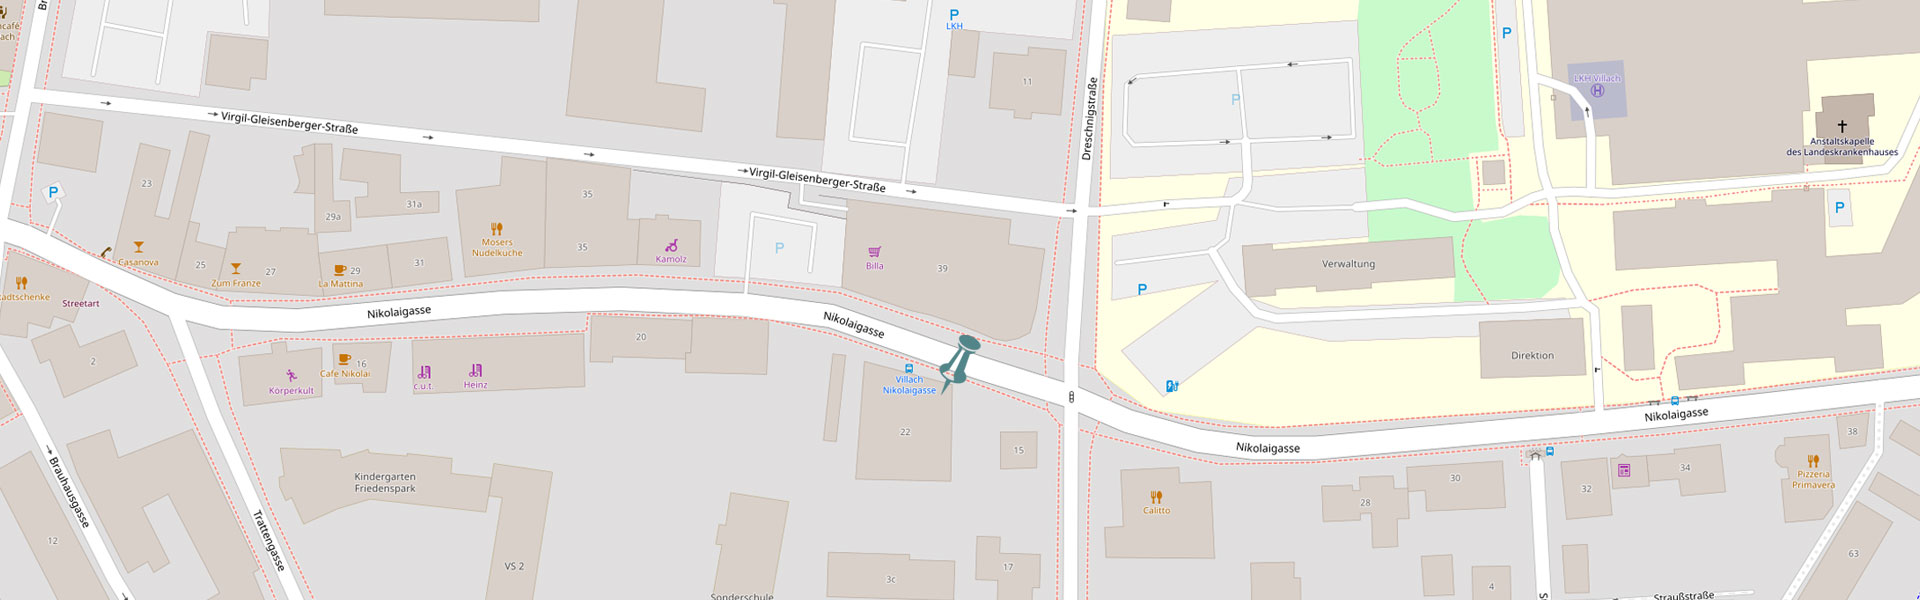 Openstreet-map-image-Location-Hoeblau-1